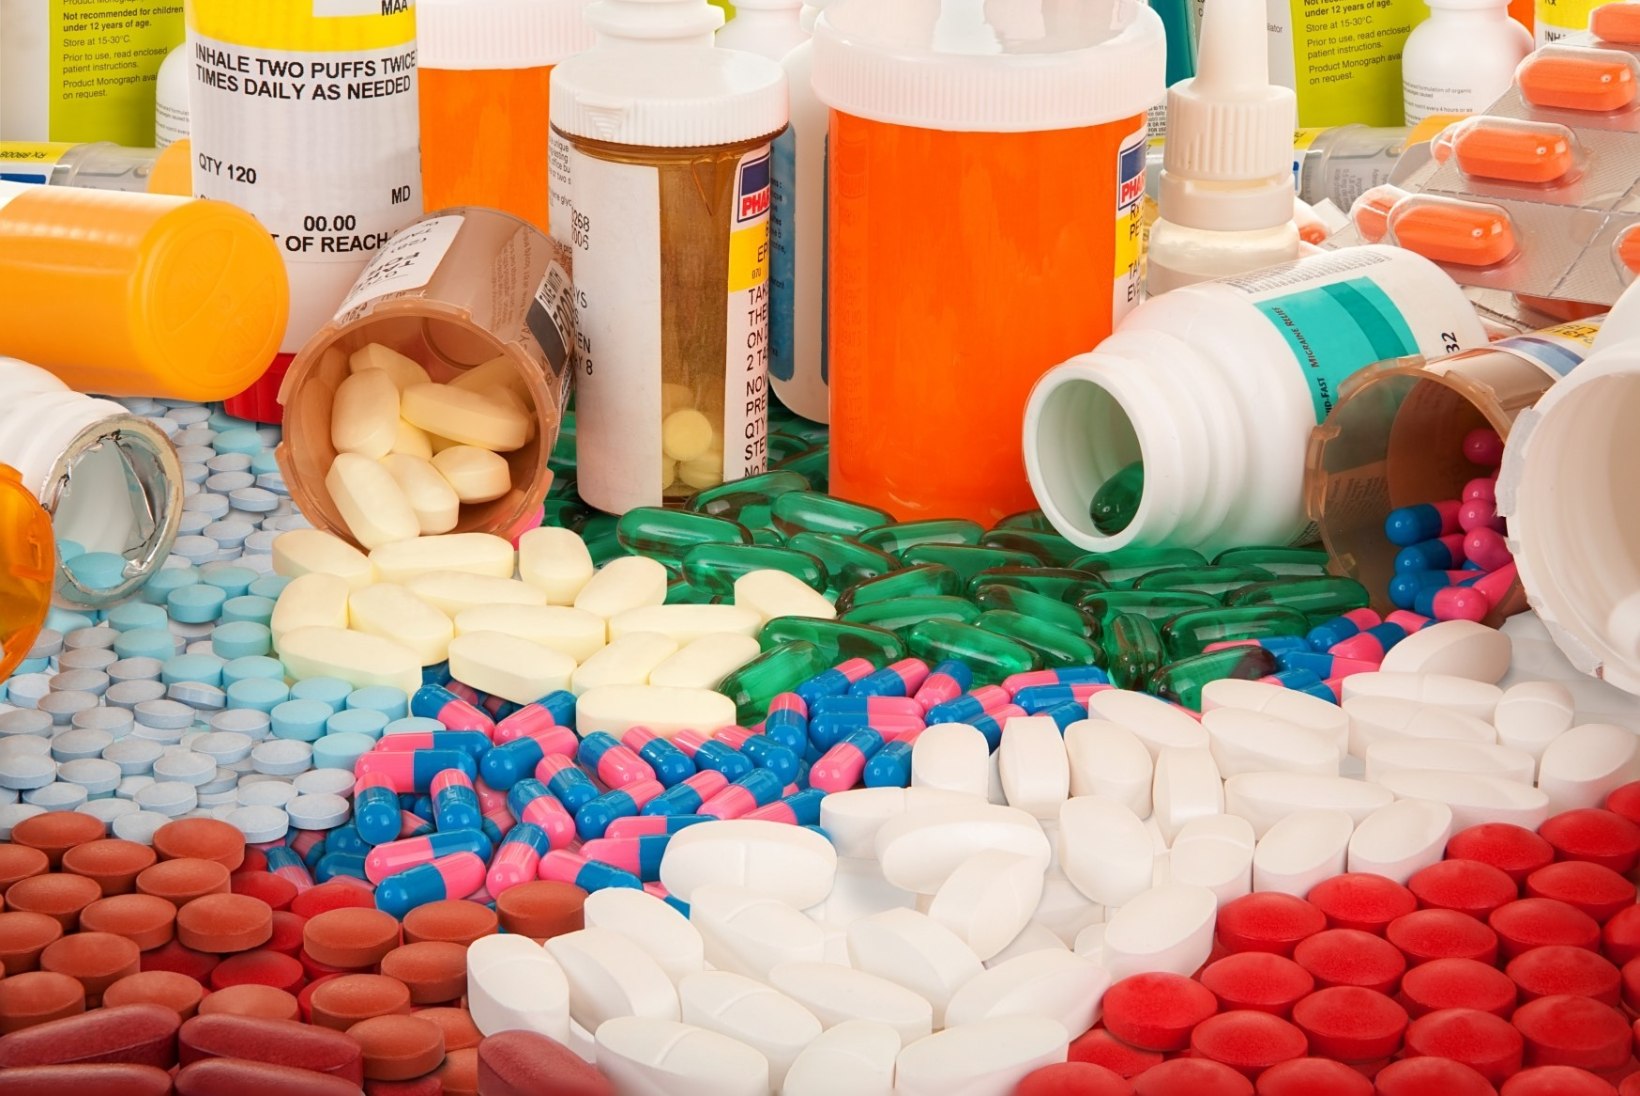 Esimesel poolaastal leiti apteekidest 18 nõuetele mittevastavat ravimit